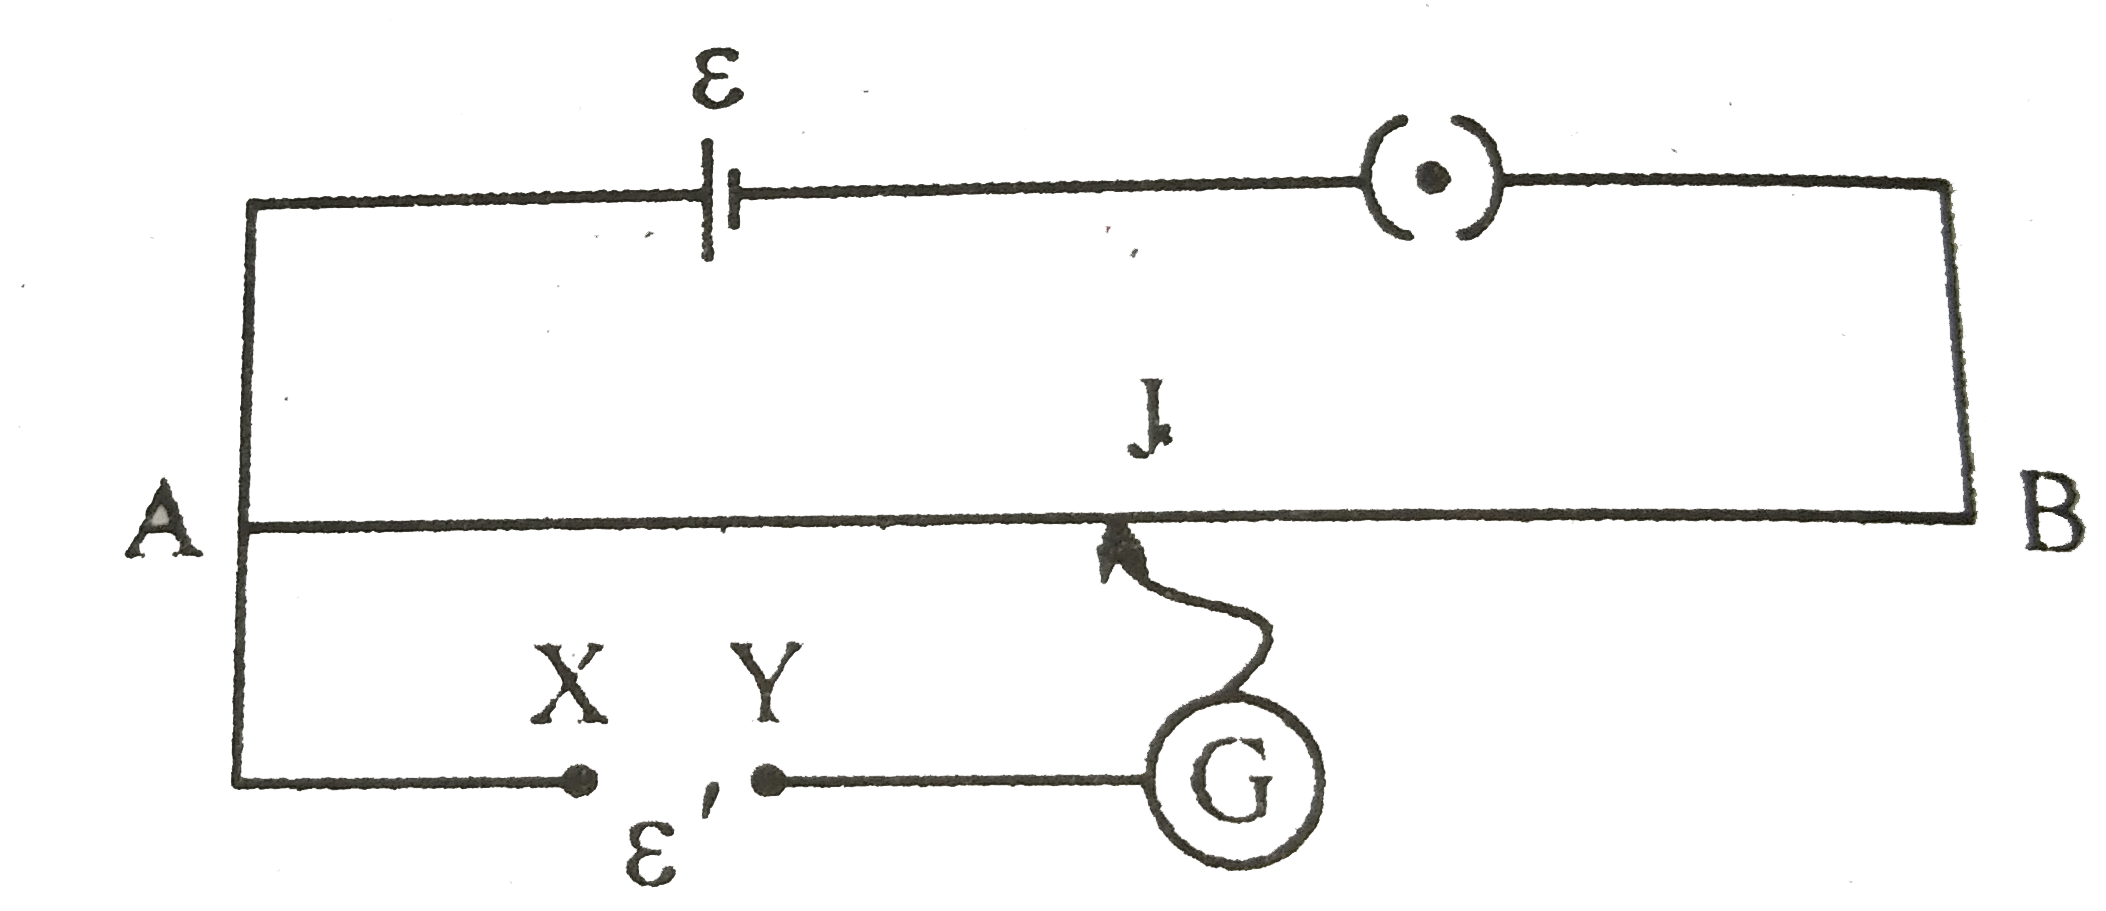 चित्र में एक पोटेशियोमीटर दर्शाया गया है जिसमे एक 2.0V और आंतरिक प्रतिरोध 0.40Omega का कोई सेल, पोटेशियोमीटर के प्रतिरोधक तार AB पर वोल्टता पात बनाए रखता है। कोई मानक सेल जो 1.02V  का अचर विद्युत वाहक बल बनाए रखता है (कुछ mA की बहुत सामान्य धाराओं के लिए) तार की 67.3cm लंबाई पर संतुलन बिंदु देता है। मानक सेल से अति न्यून धारा लेना सुनिश्चित करने के लिए इसके साथ परिपथ में श्रेणी 600kOmega का एक अति उच्च प्रतिरोध इसके साथ संबद्ध किया जाता है, जिसके संतुलन बिंदु प्राप्त होने के निकट लघुपथित कर दिया जाता है। इसके बाद मानक सेल को किसी अज्ञात विद्युत वाहक बल epsilon के सेल से प्रतिस्थापित कर दिया जाता है जिससे संतुलन बिंदु तार की 82.3cm लंबाई पर प्राप्त होता है।      epsilon का मान क्या है?